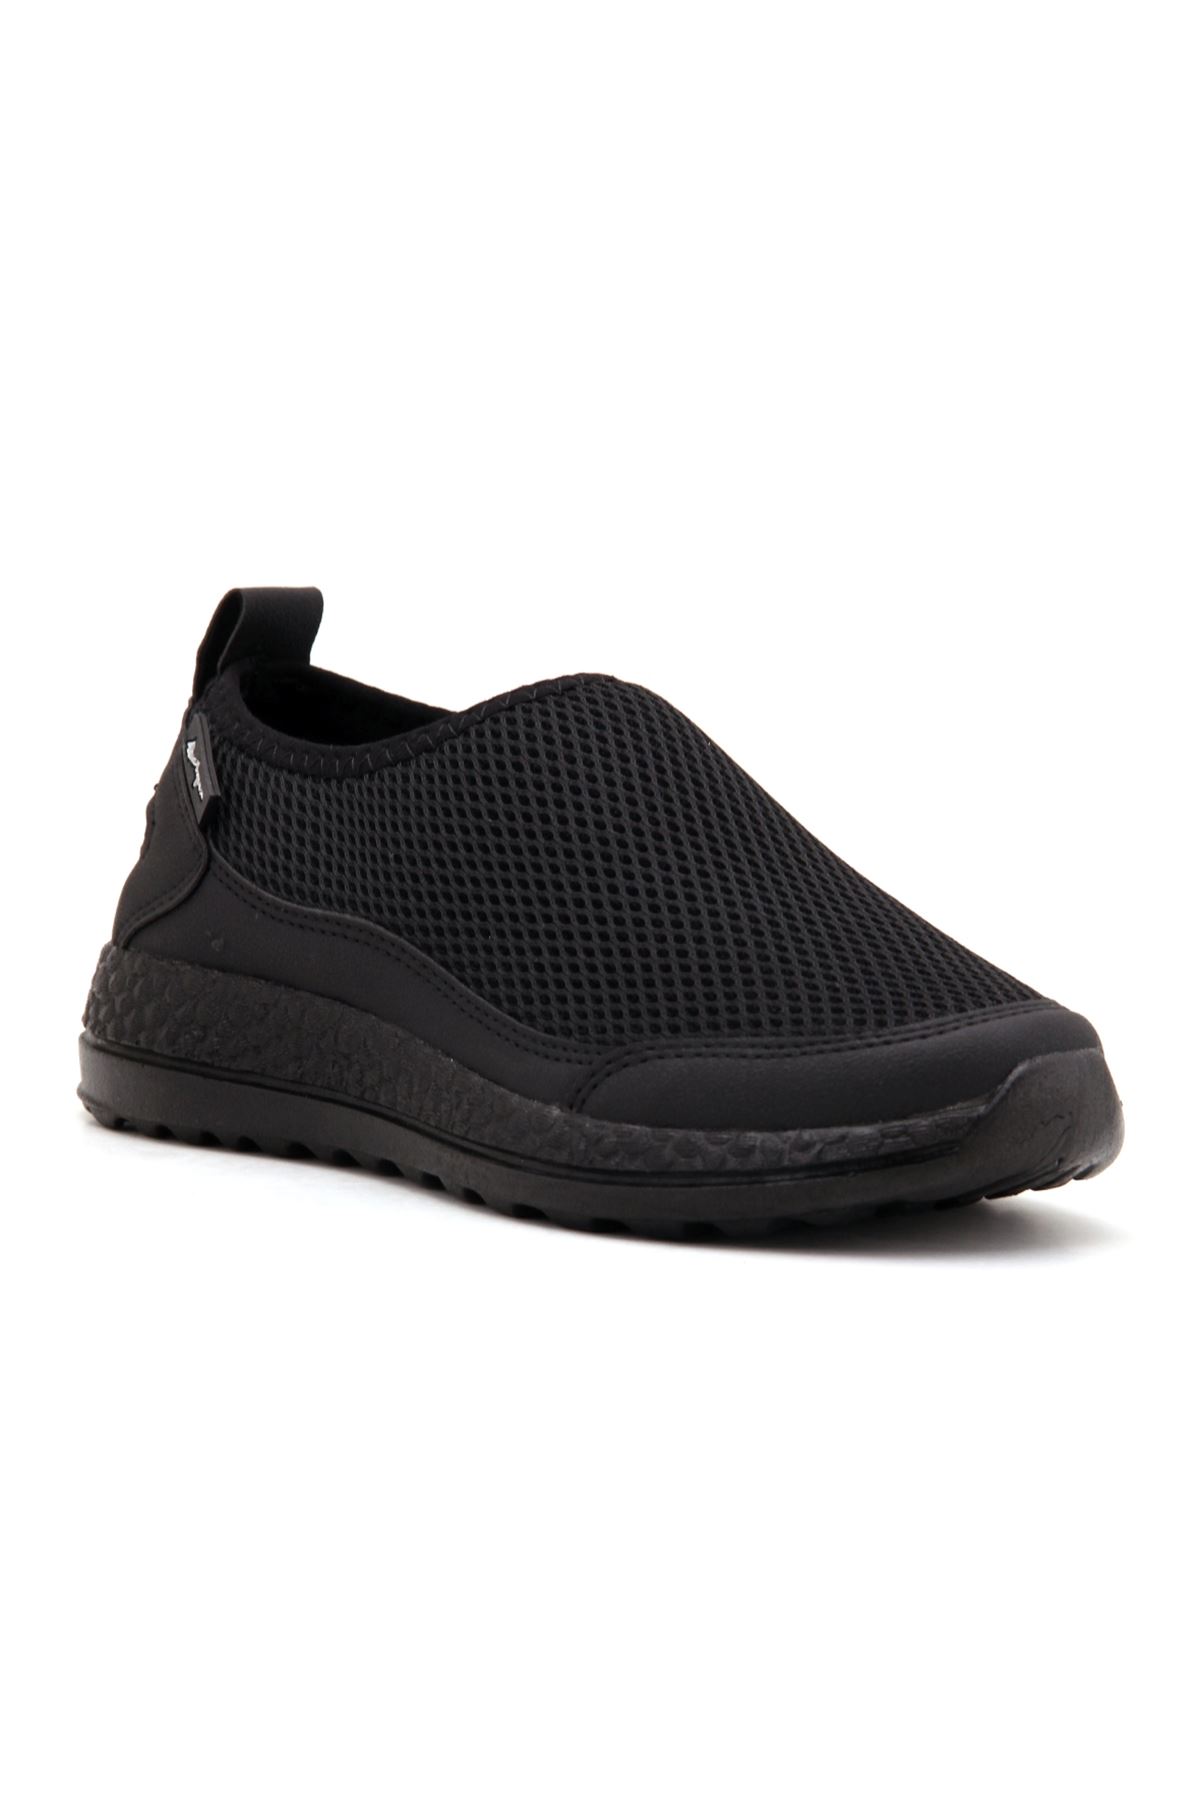 Ayaktamoda Comfort Erkek Spor Ayakkabı - Siyah